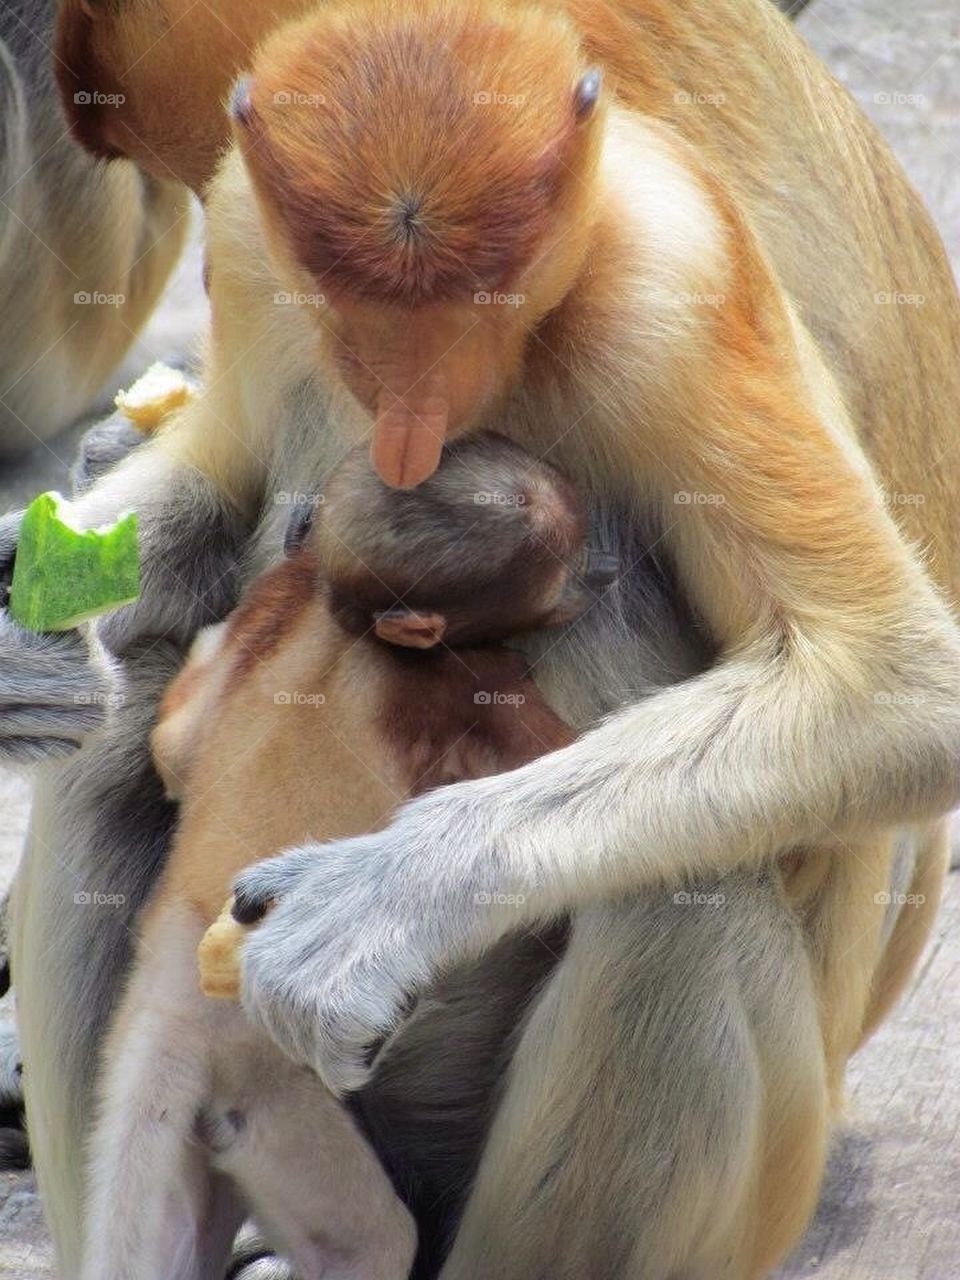 Proboscis Monkey love